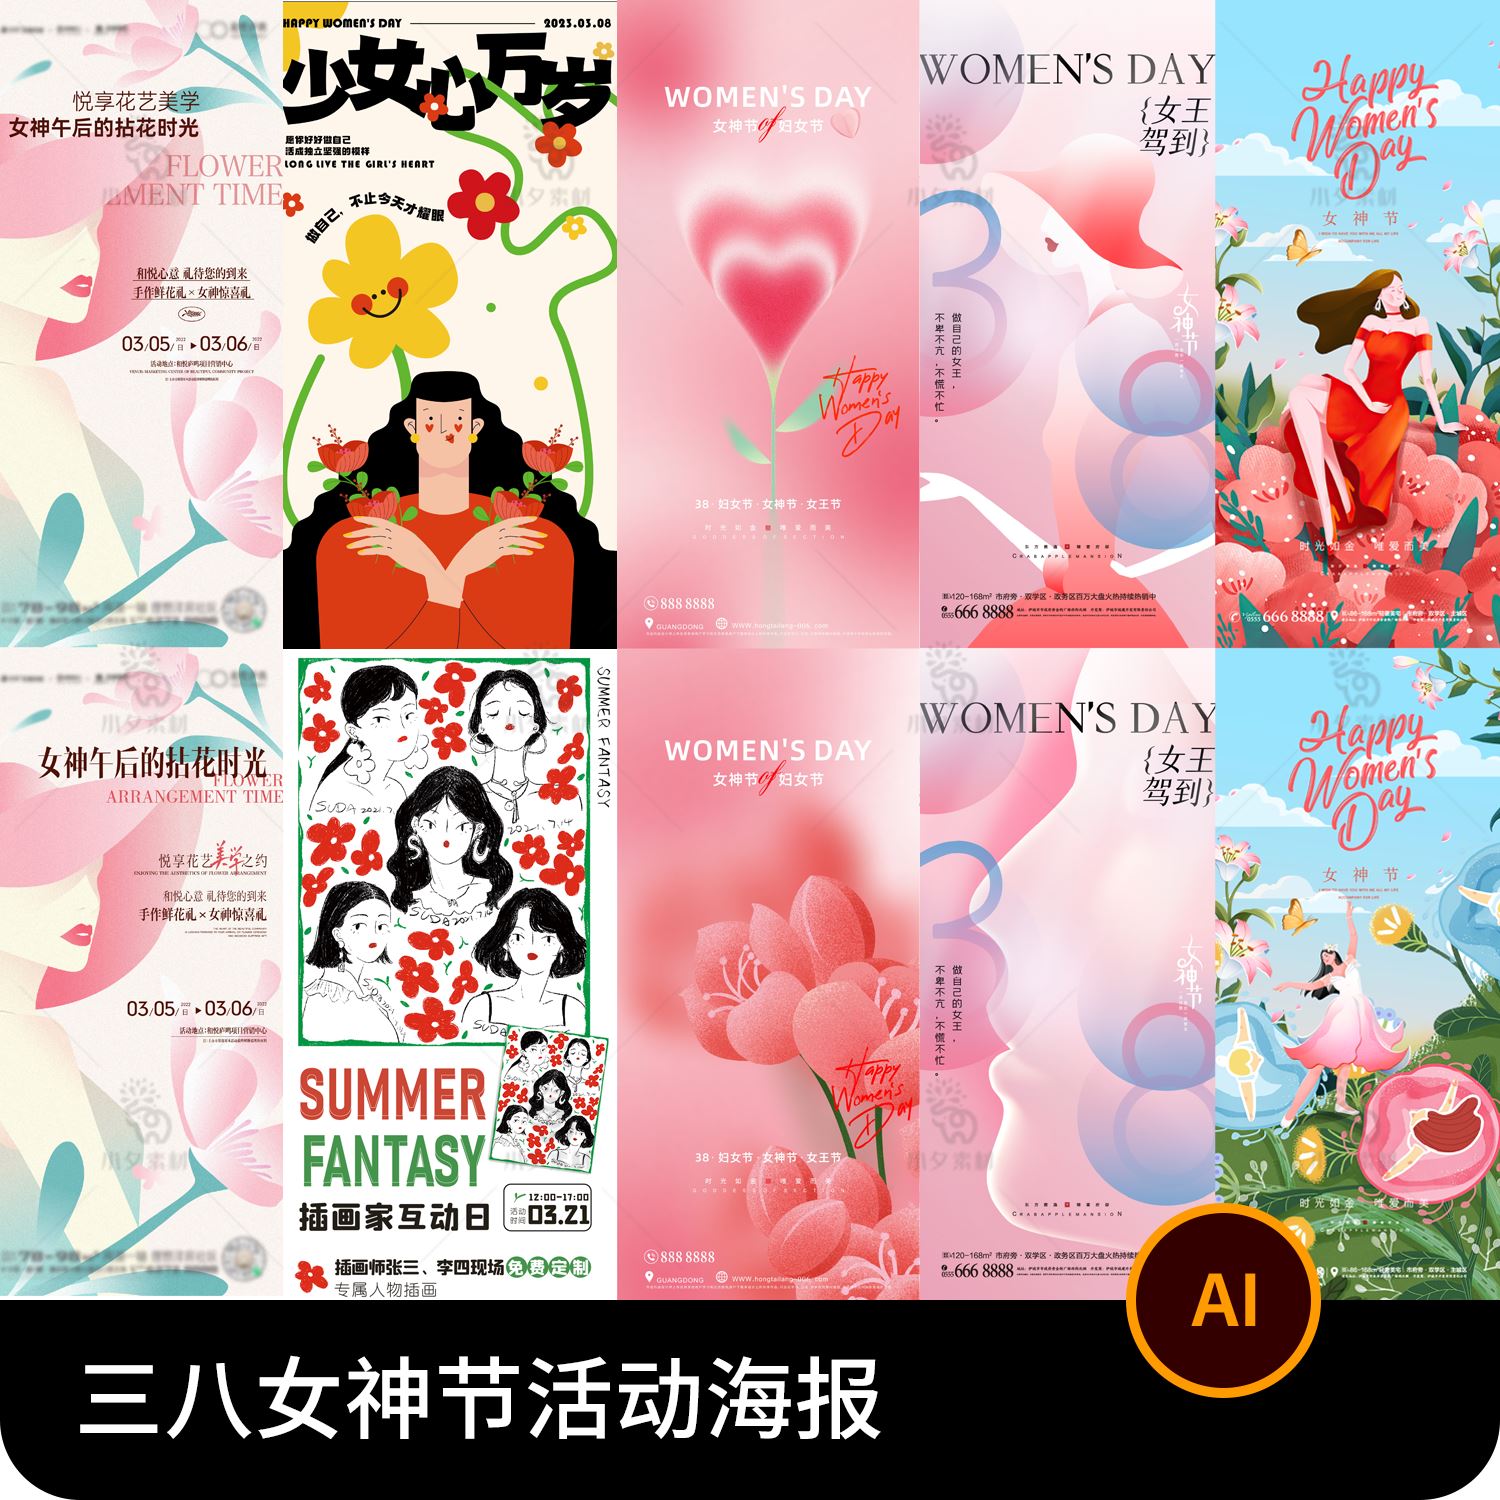 三八38妇女节女神节女王节活动宣传公众号手机海报AI矢量设计素材